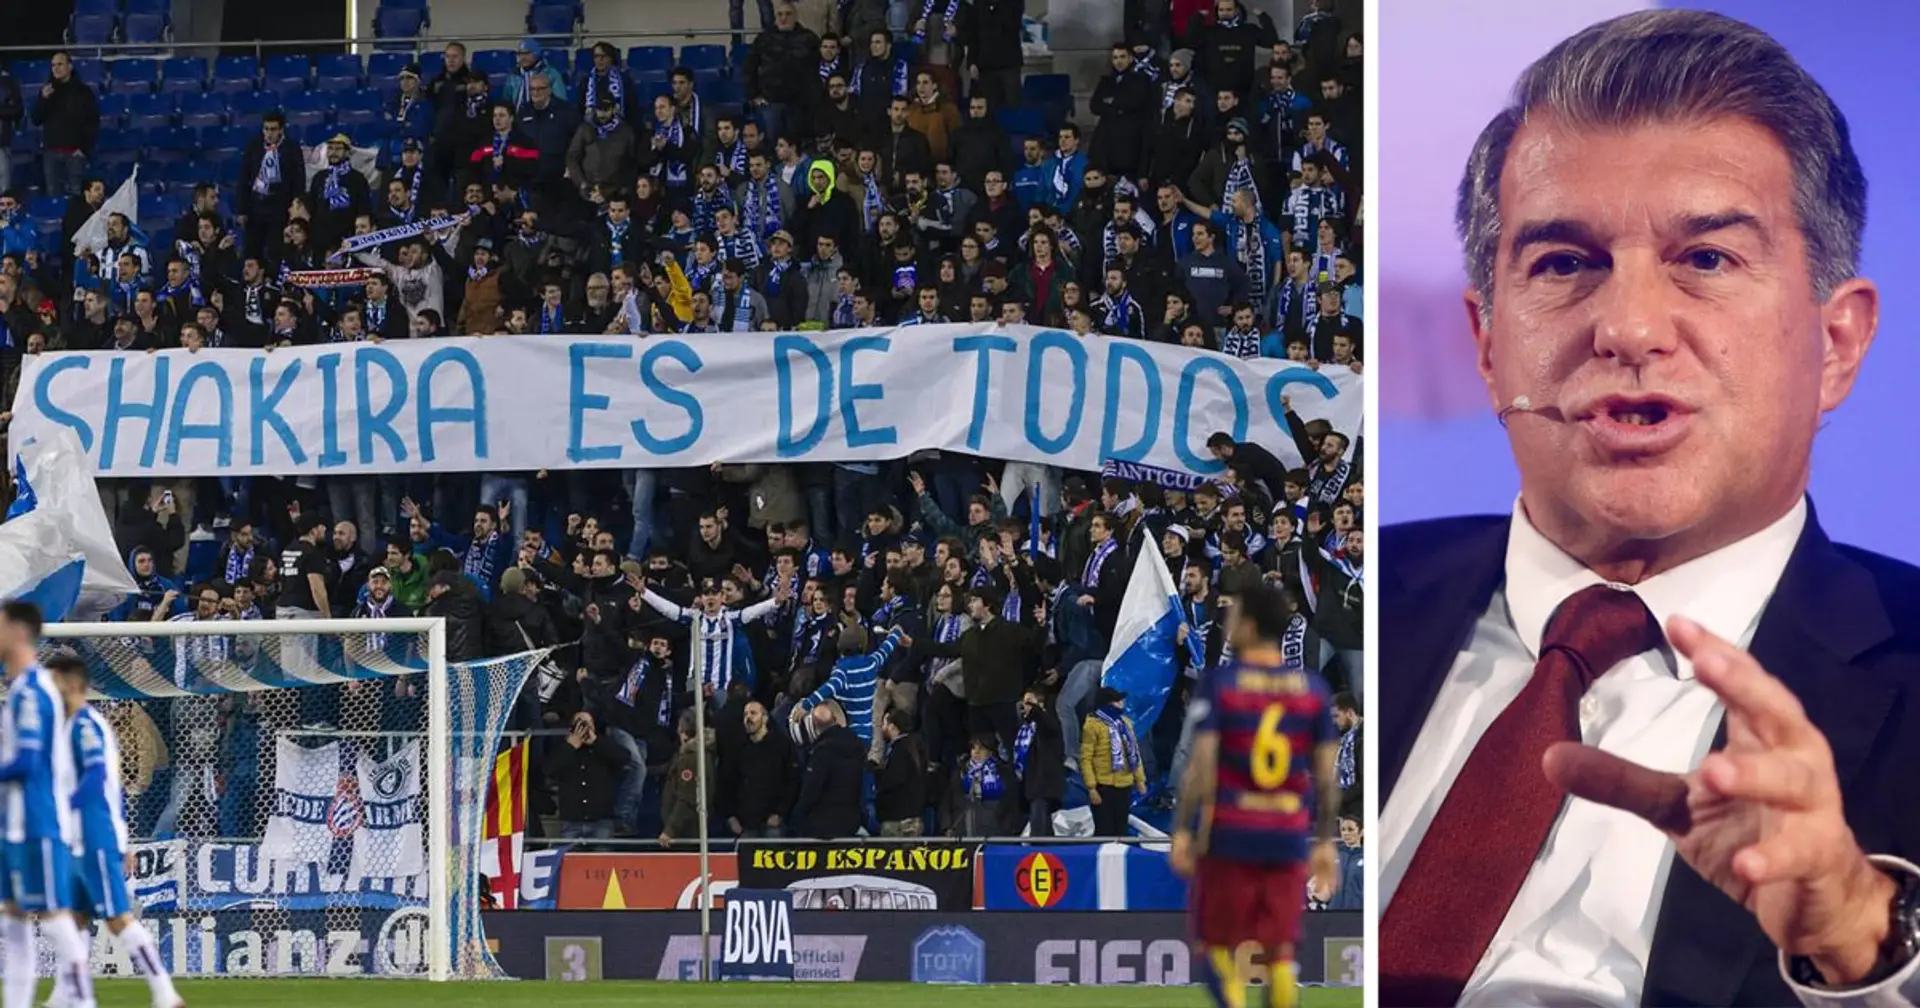 Rache! Barca verbietet Espanyol-Fans den Kauf von Eintrittskarten für das kommende Derby im Camp Nou